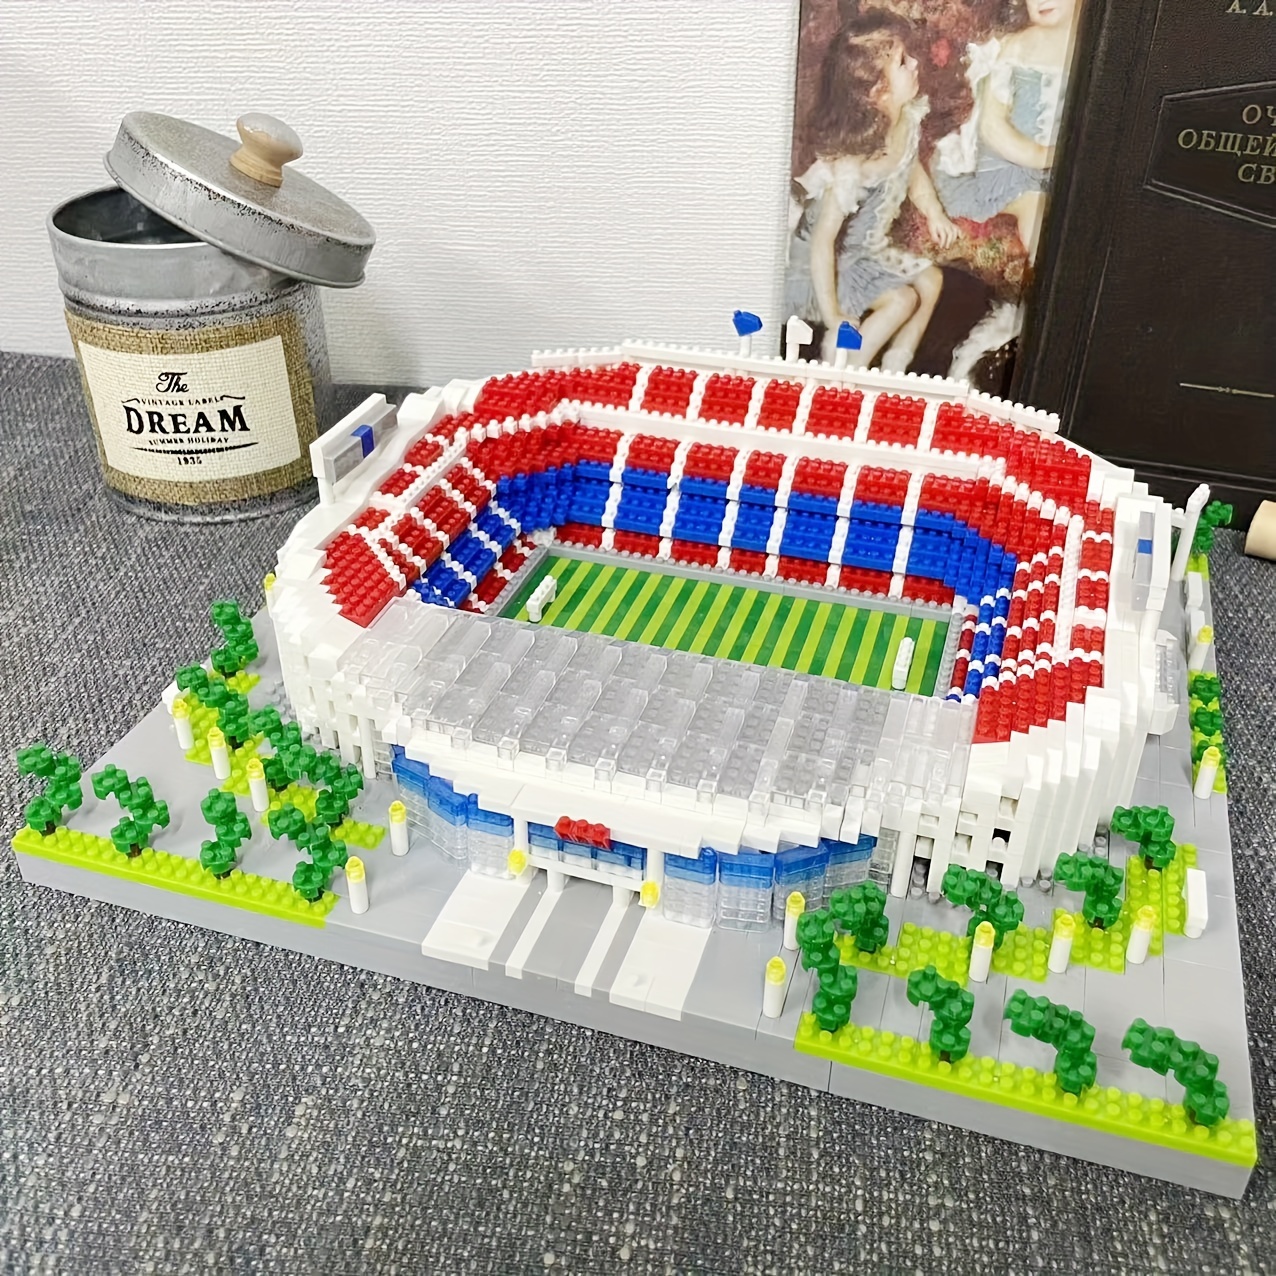 3D Puzzle Toy, Emirates Stadium/Nou Camp Stadium/Real Madrid